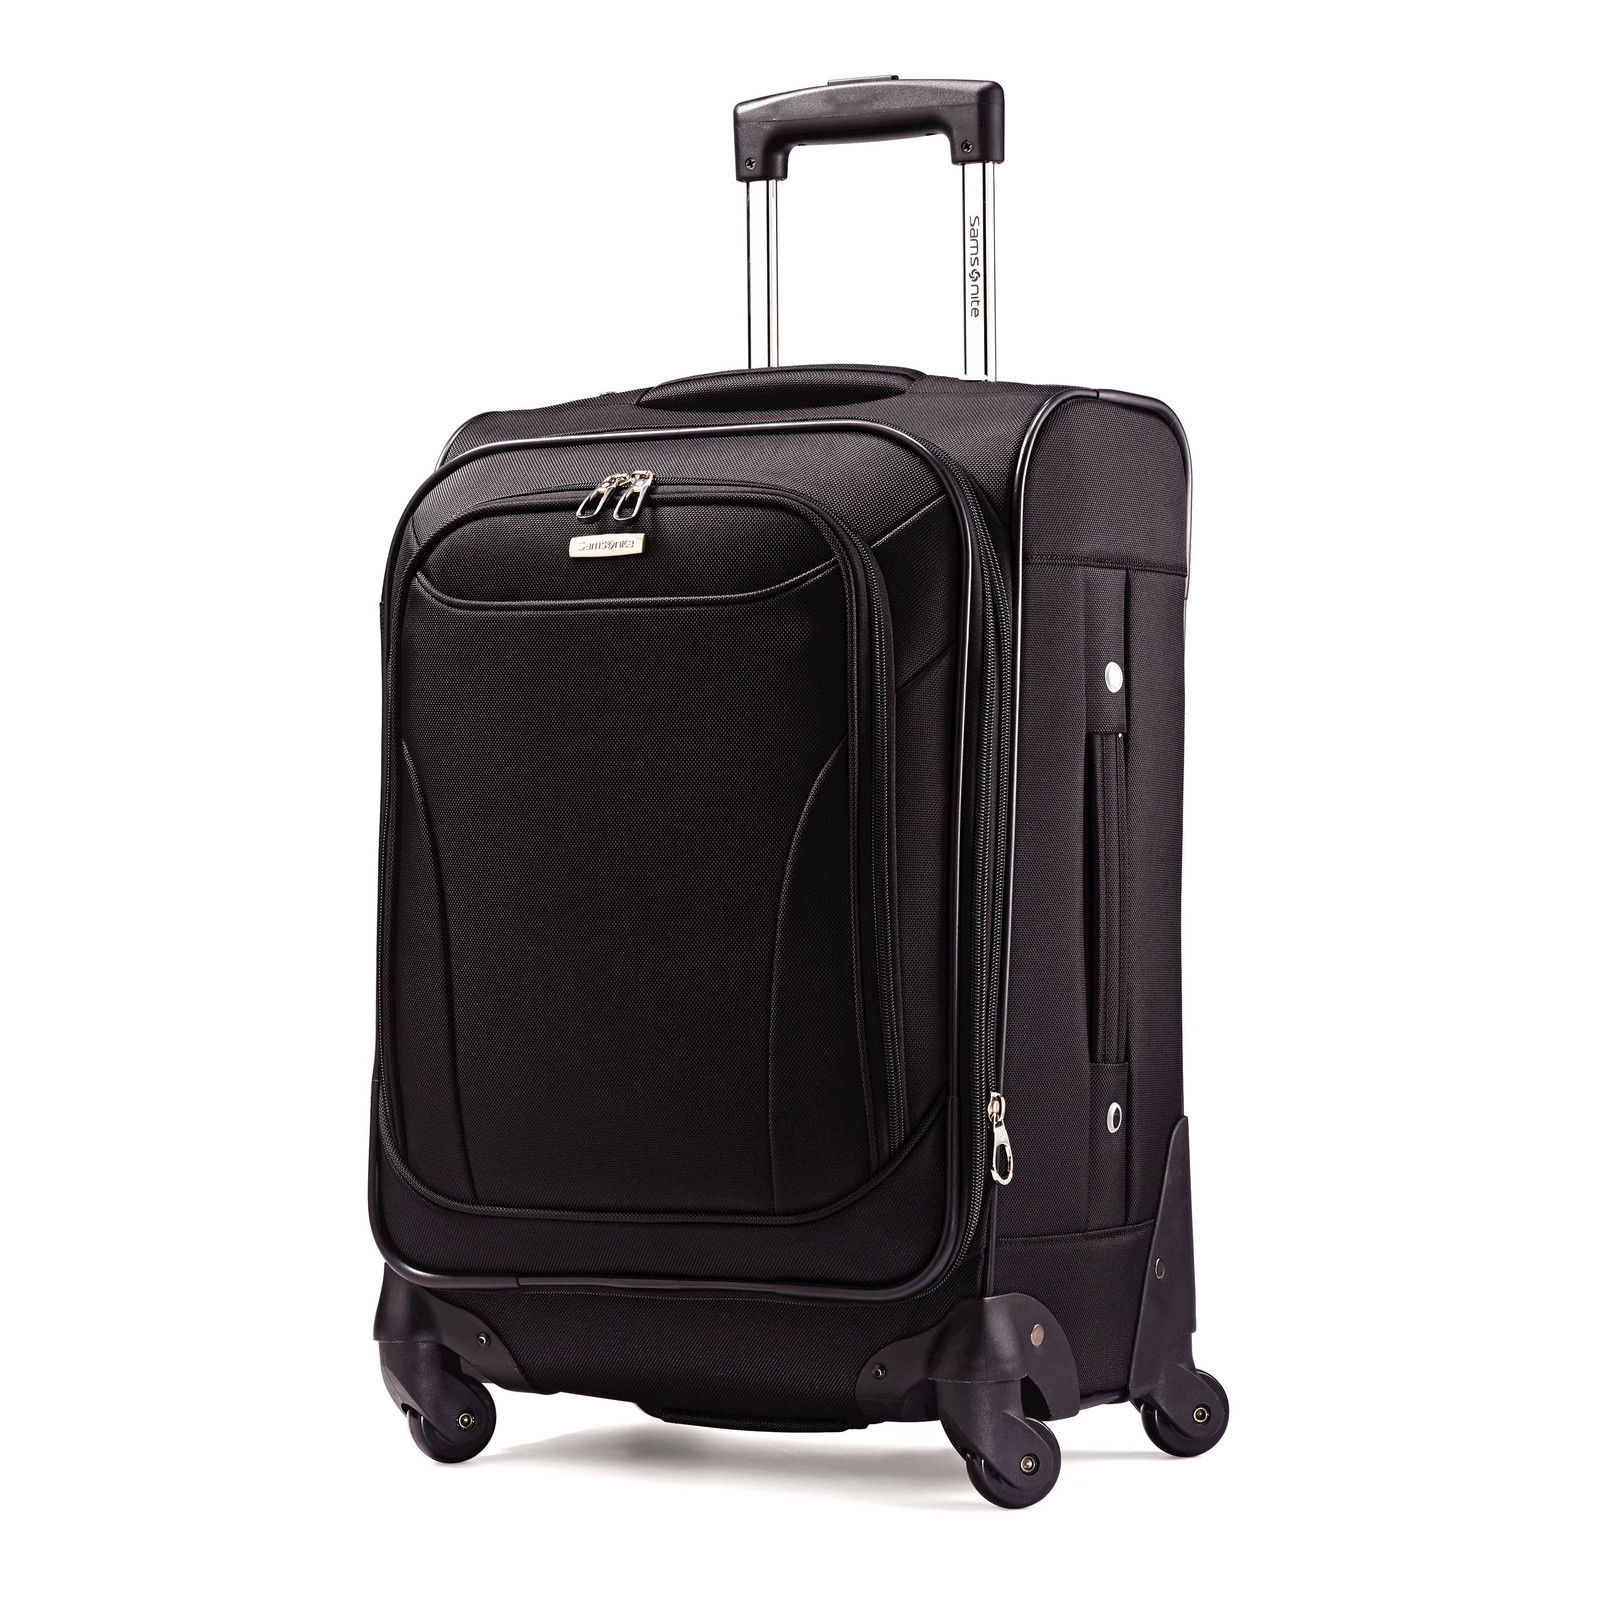 Samsonite Bartlett Spinner Luggage Starting at $59.99 Shipped!